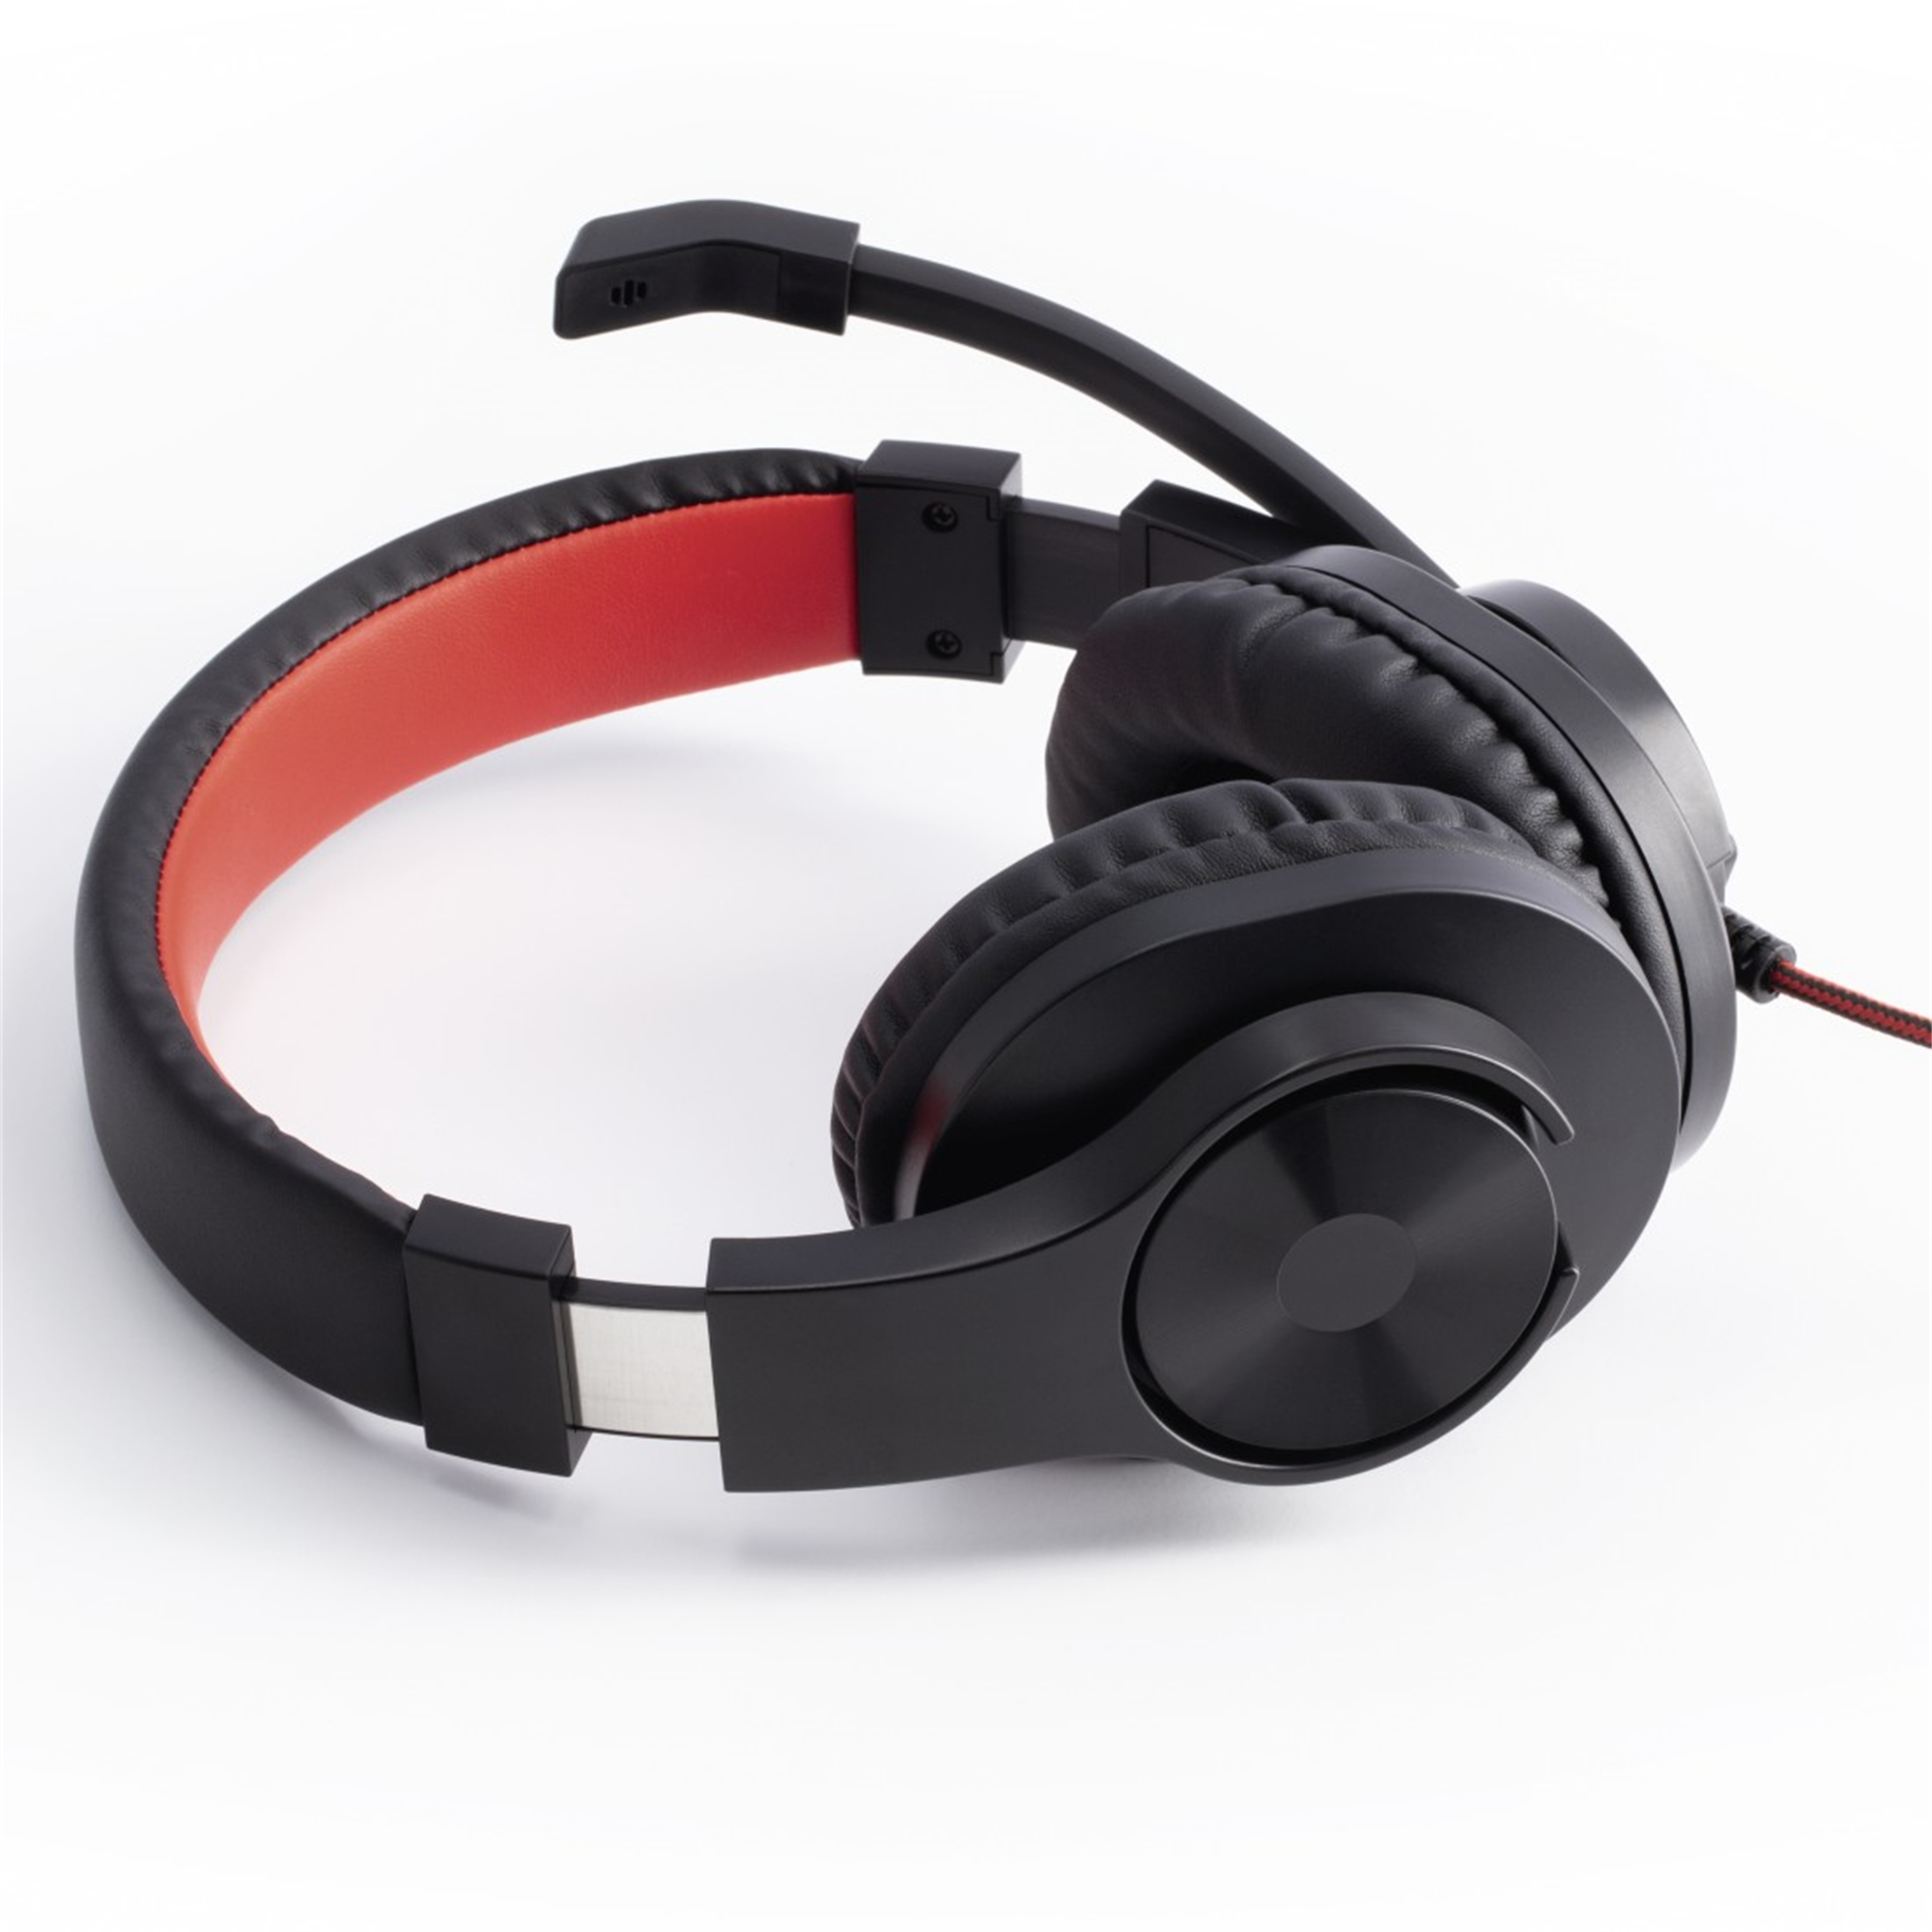 HAMA HS-USB400, Over-ear schwarz Headset